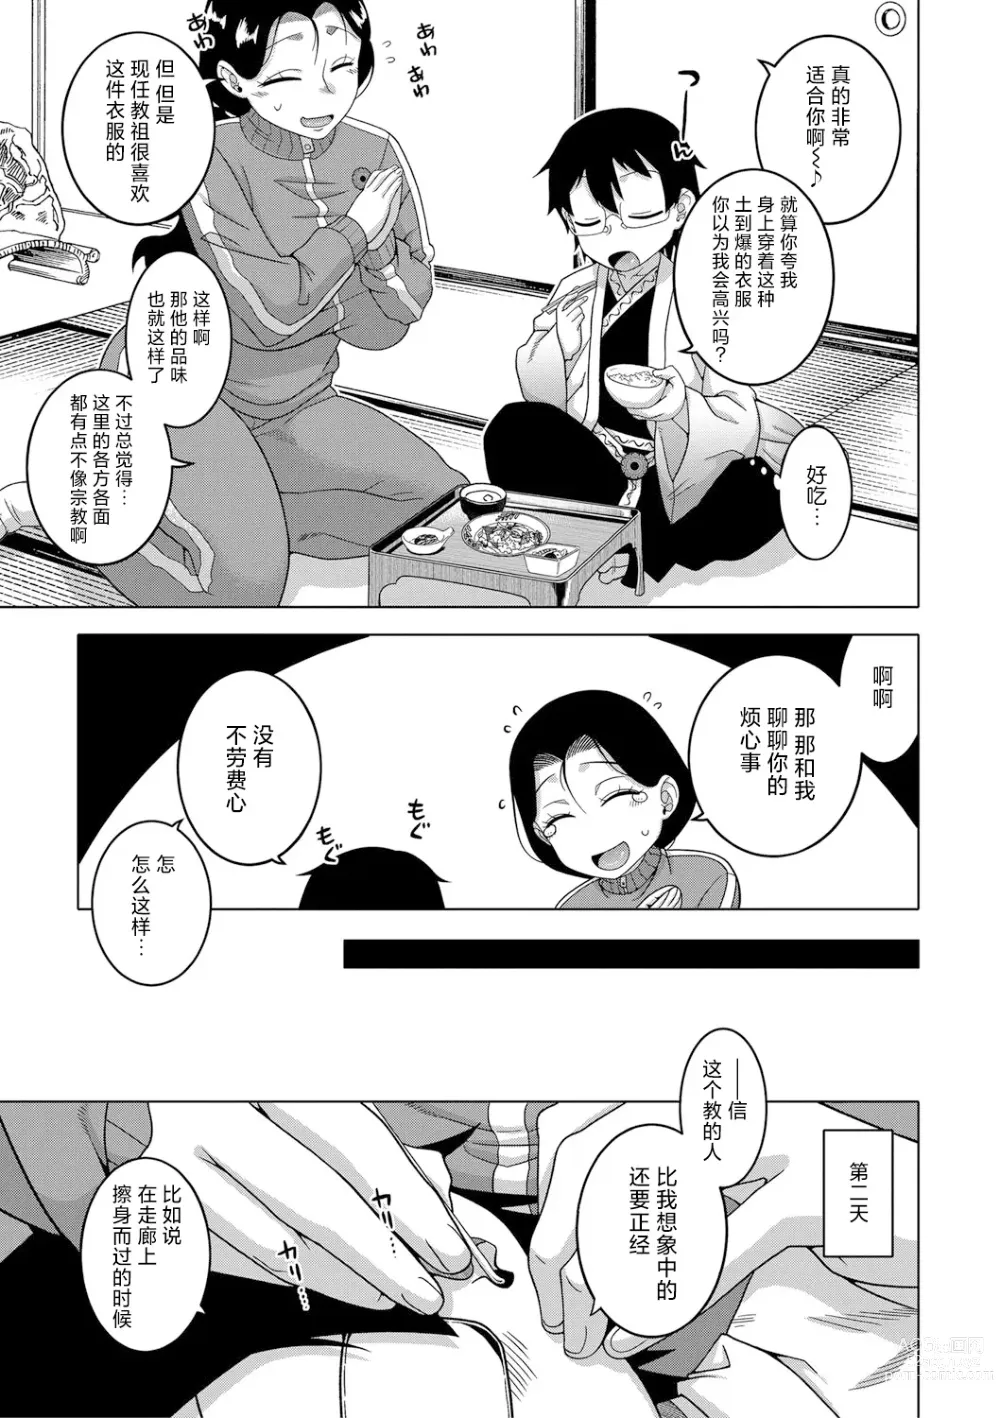 Page 10 of manga Kami-sama no Tsukurikata Ch. 1-5